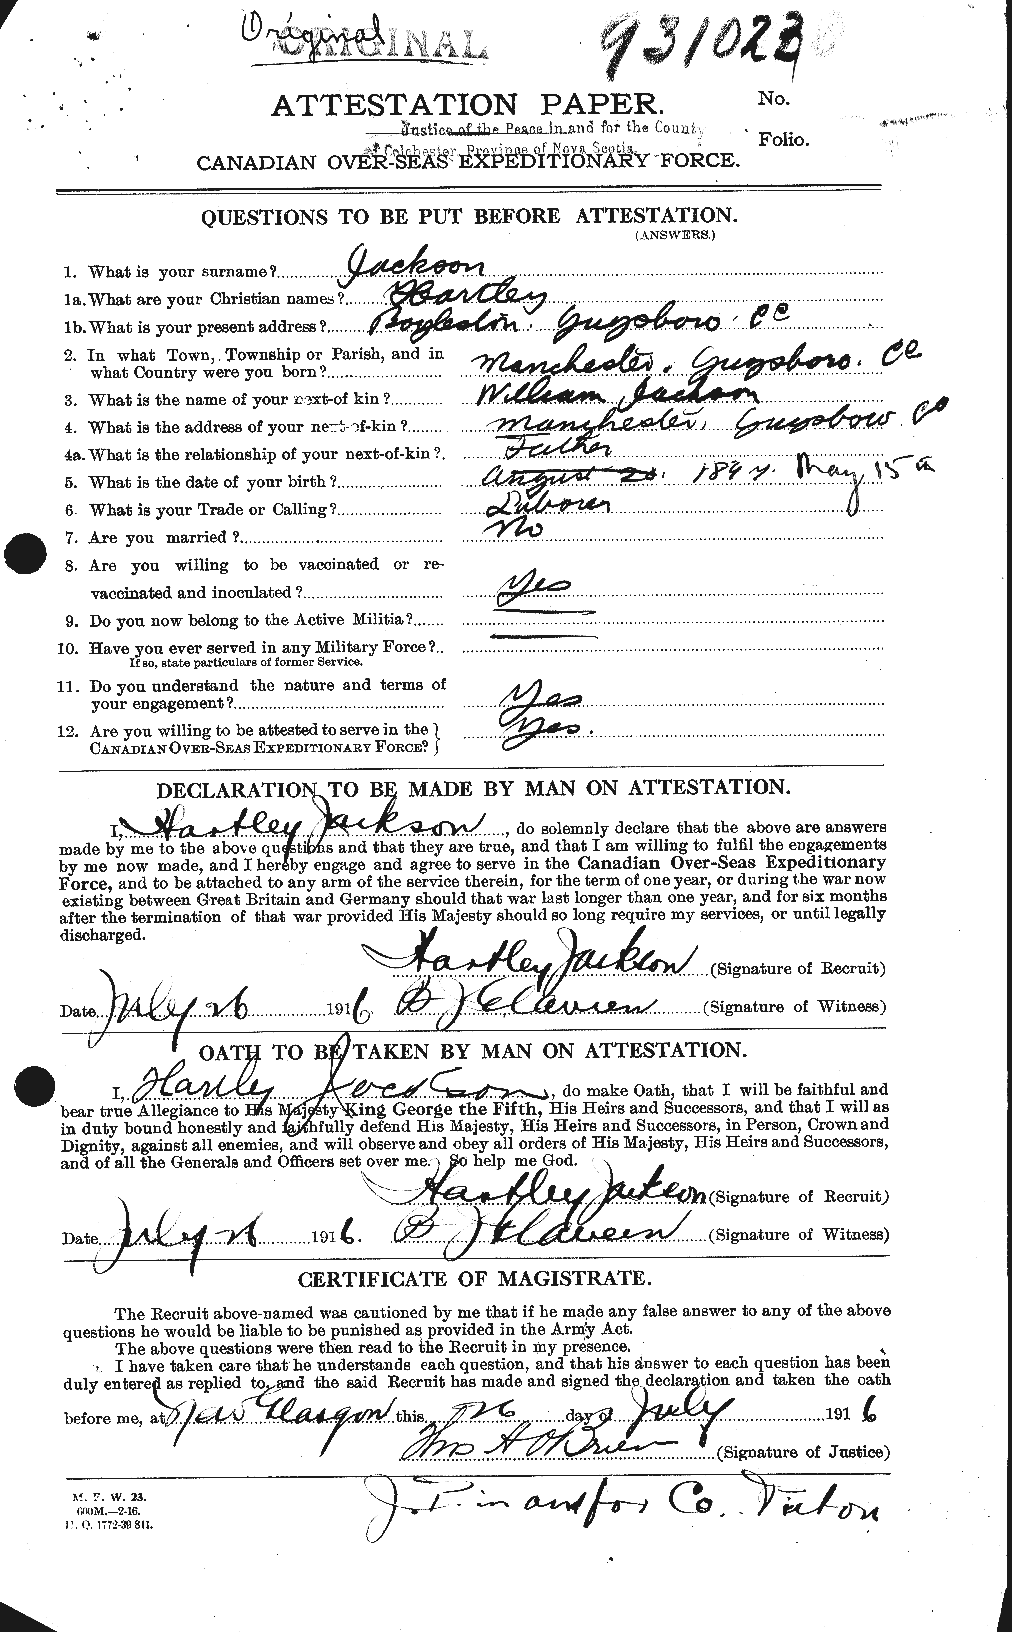 Dossiers du Personnel de la Première Guerre mondiale - CEC 413643a